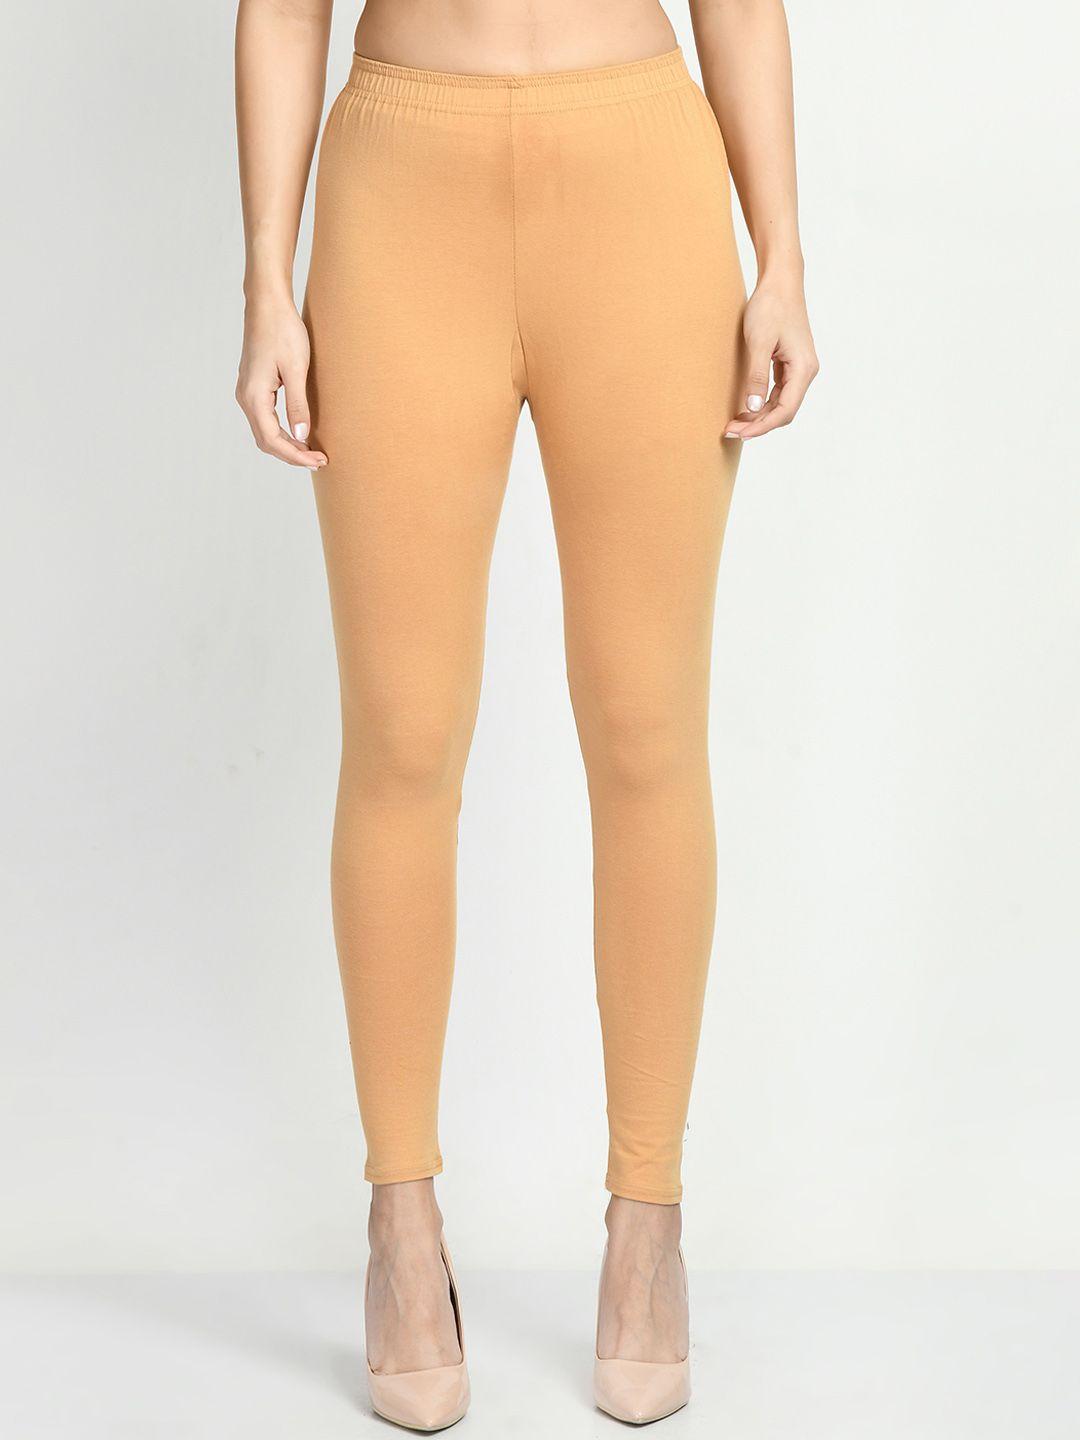 v&m-women-cotton-slim-fit-ankle-length-leggings